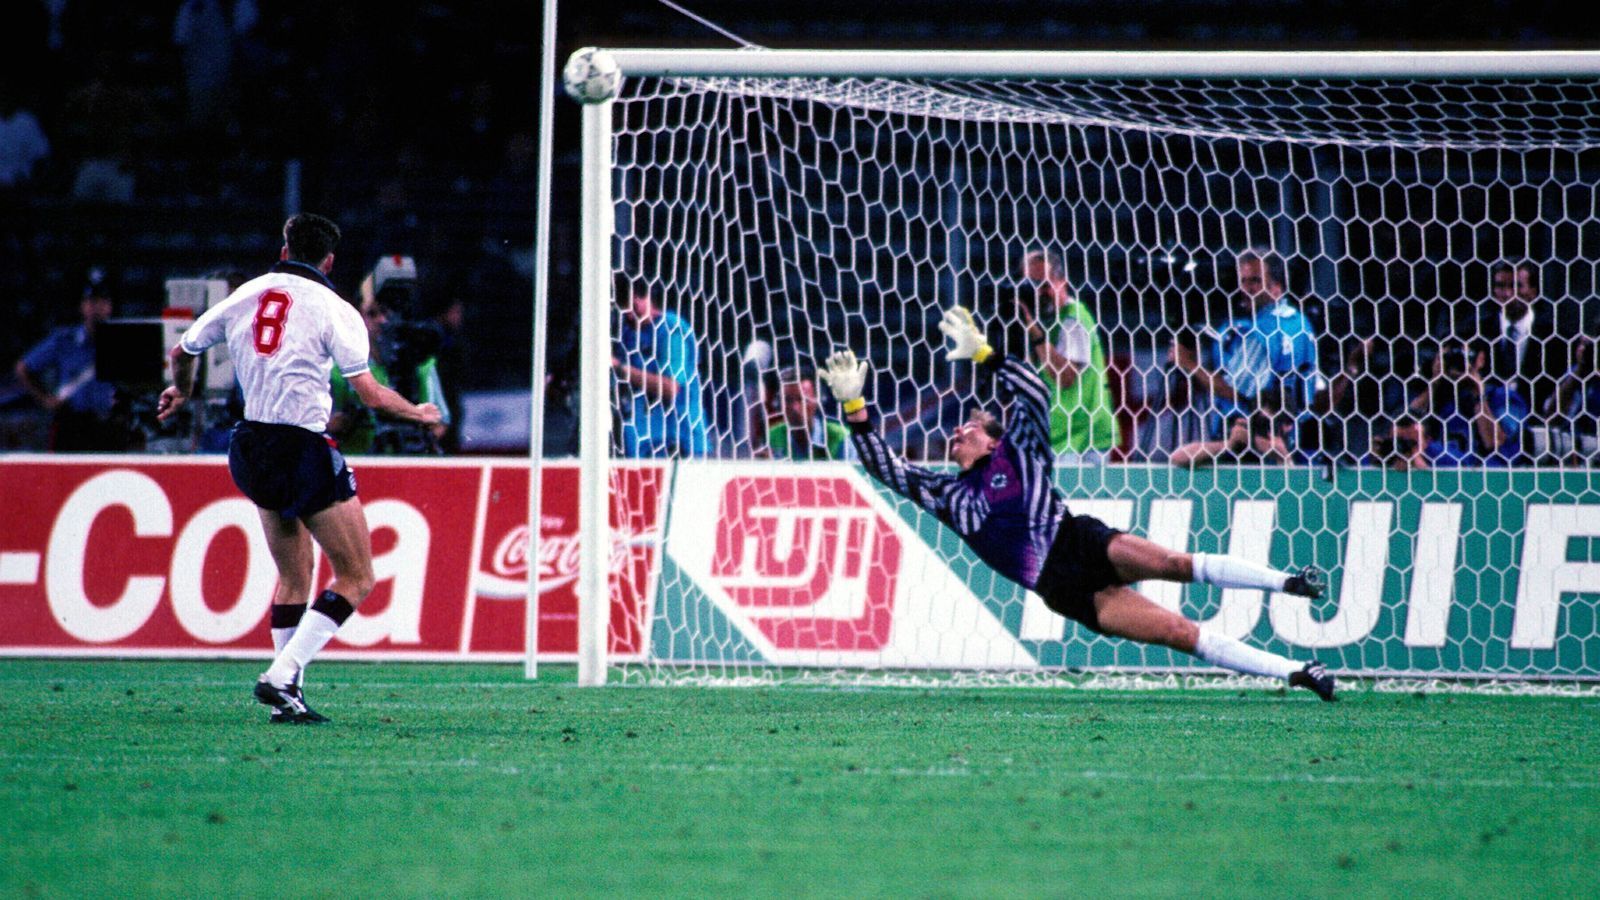 
                <strong>WM 1990 (Halbfinale): Deutschland - England 5:4 n.E.</strong><br>
                Im Sommer 1990 klappte es für Deutschland mit dem dritten WM-Titel nach 1954 und 1974. Bei der Endrunde in Italien musste die Mannschaft des damaligen Bundestrainers Franz Beckenbauer aber auch schwierige Momente überstehen, etwa das Elfmeterschießen im Halbfinale gegen England. Nach einem 1:1-Unentschieden nach 120 Minuten trafen in weiterer Folge die ersten drei Elfmeterschützen beider Teams vom Punkt aus. Danach scheiterte Stuart Pearce an Deutschlands Keeper Bodo Illgner, ehe Olaf Thon Deutschland erstmals im Elfmeterschießen in Führung brachte. Den anschließenden Elfmeter ballerte Chris Waddle knapp links über das Tor und sorgte somit für Deutschlands Final-Einzug gegen Argentinien. Im Endspiel war es dann ebenfalls ein verwandelter Strafstoß von Andreas Brehme, der das DFB-Team jubeln ließ.
              